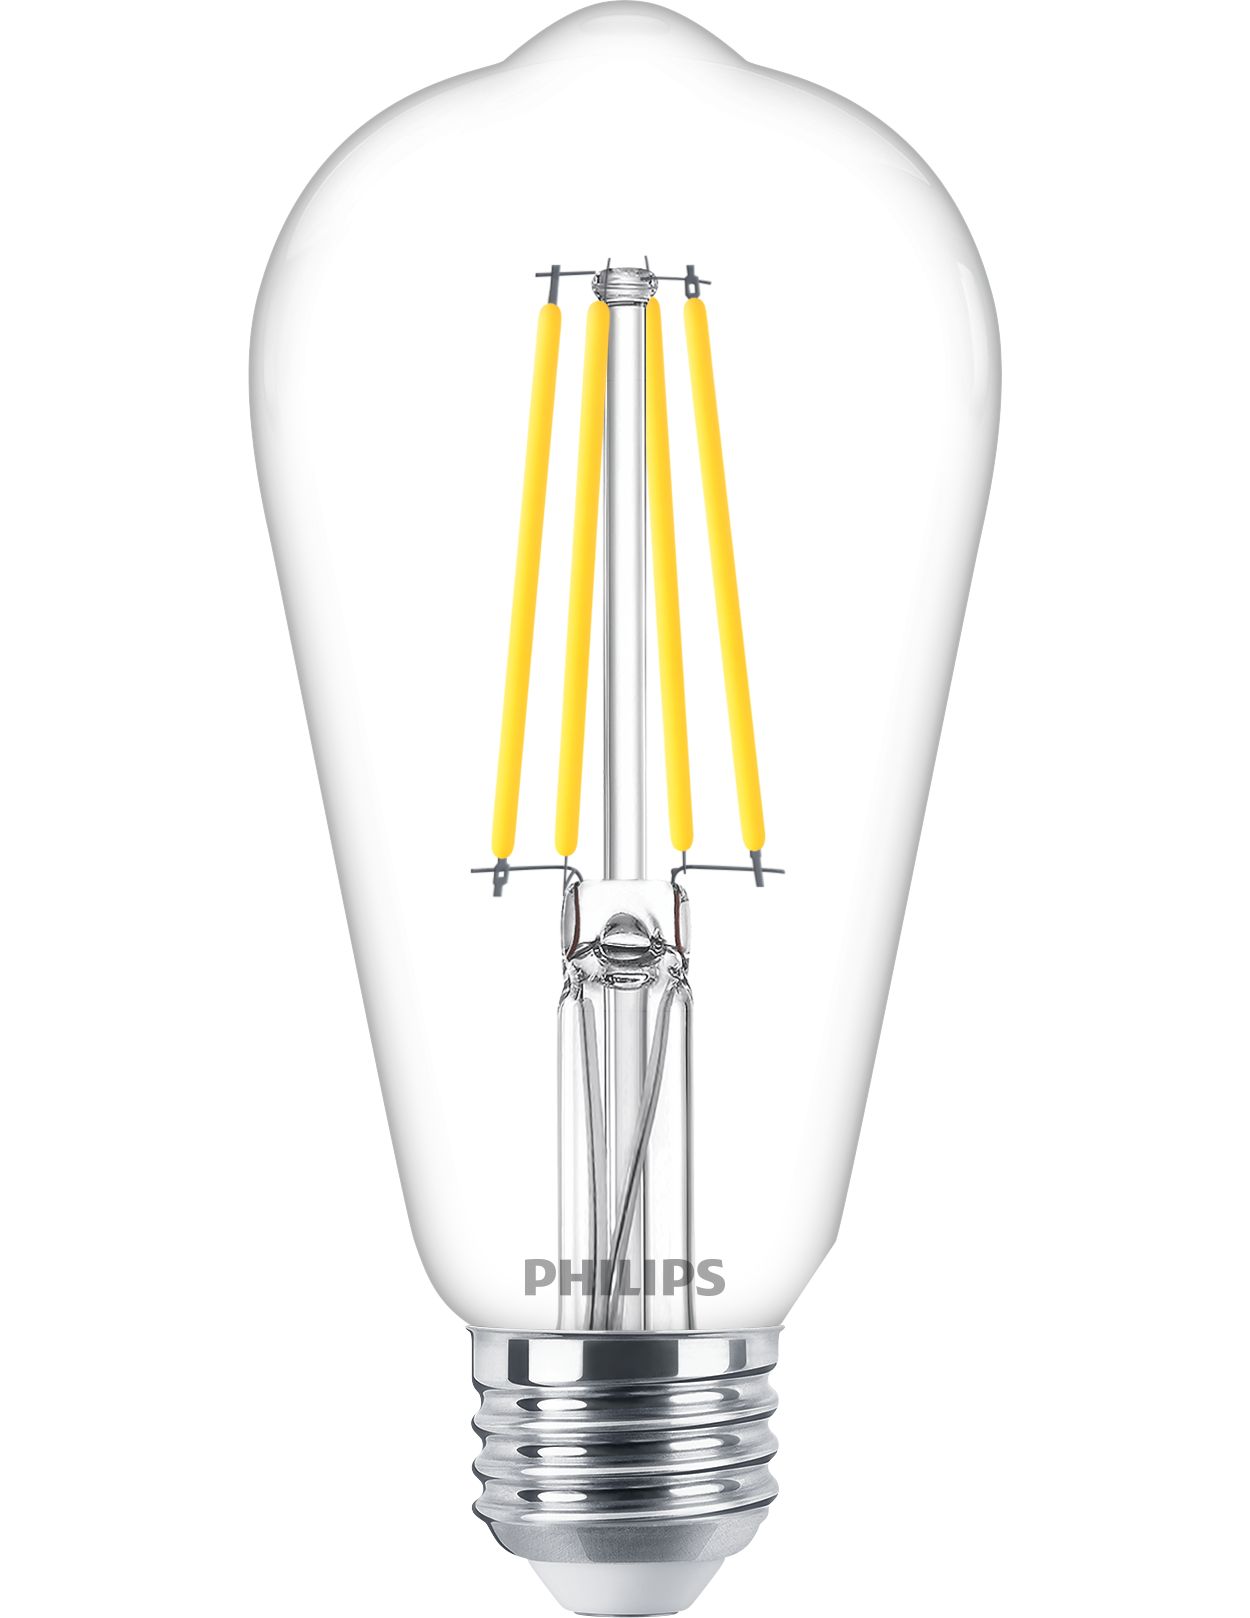 Ampoule LED 4W Filament Standard Calotte Argentée (397lm) E14 - Philips